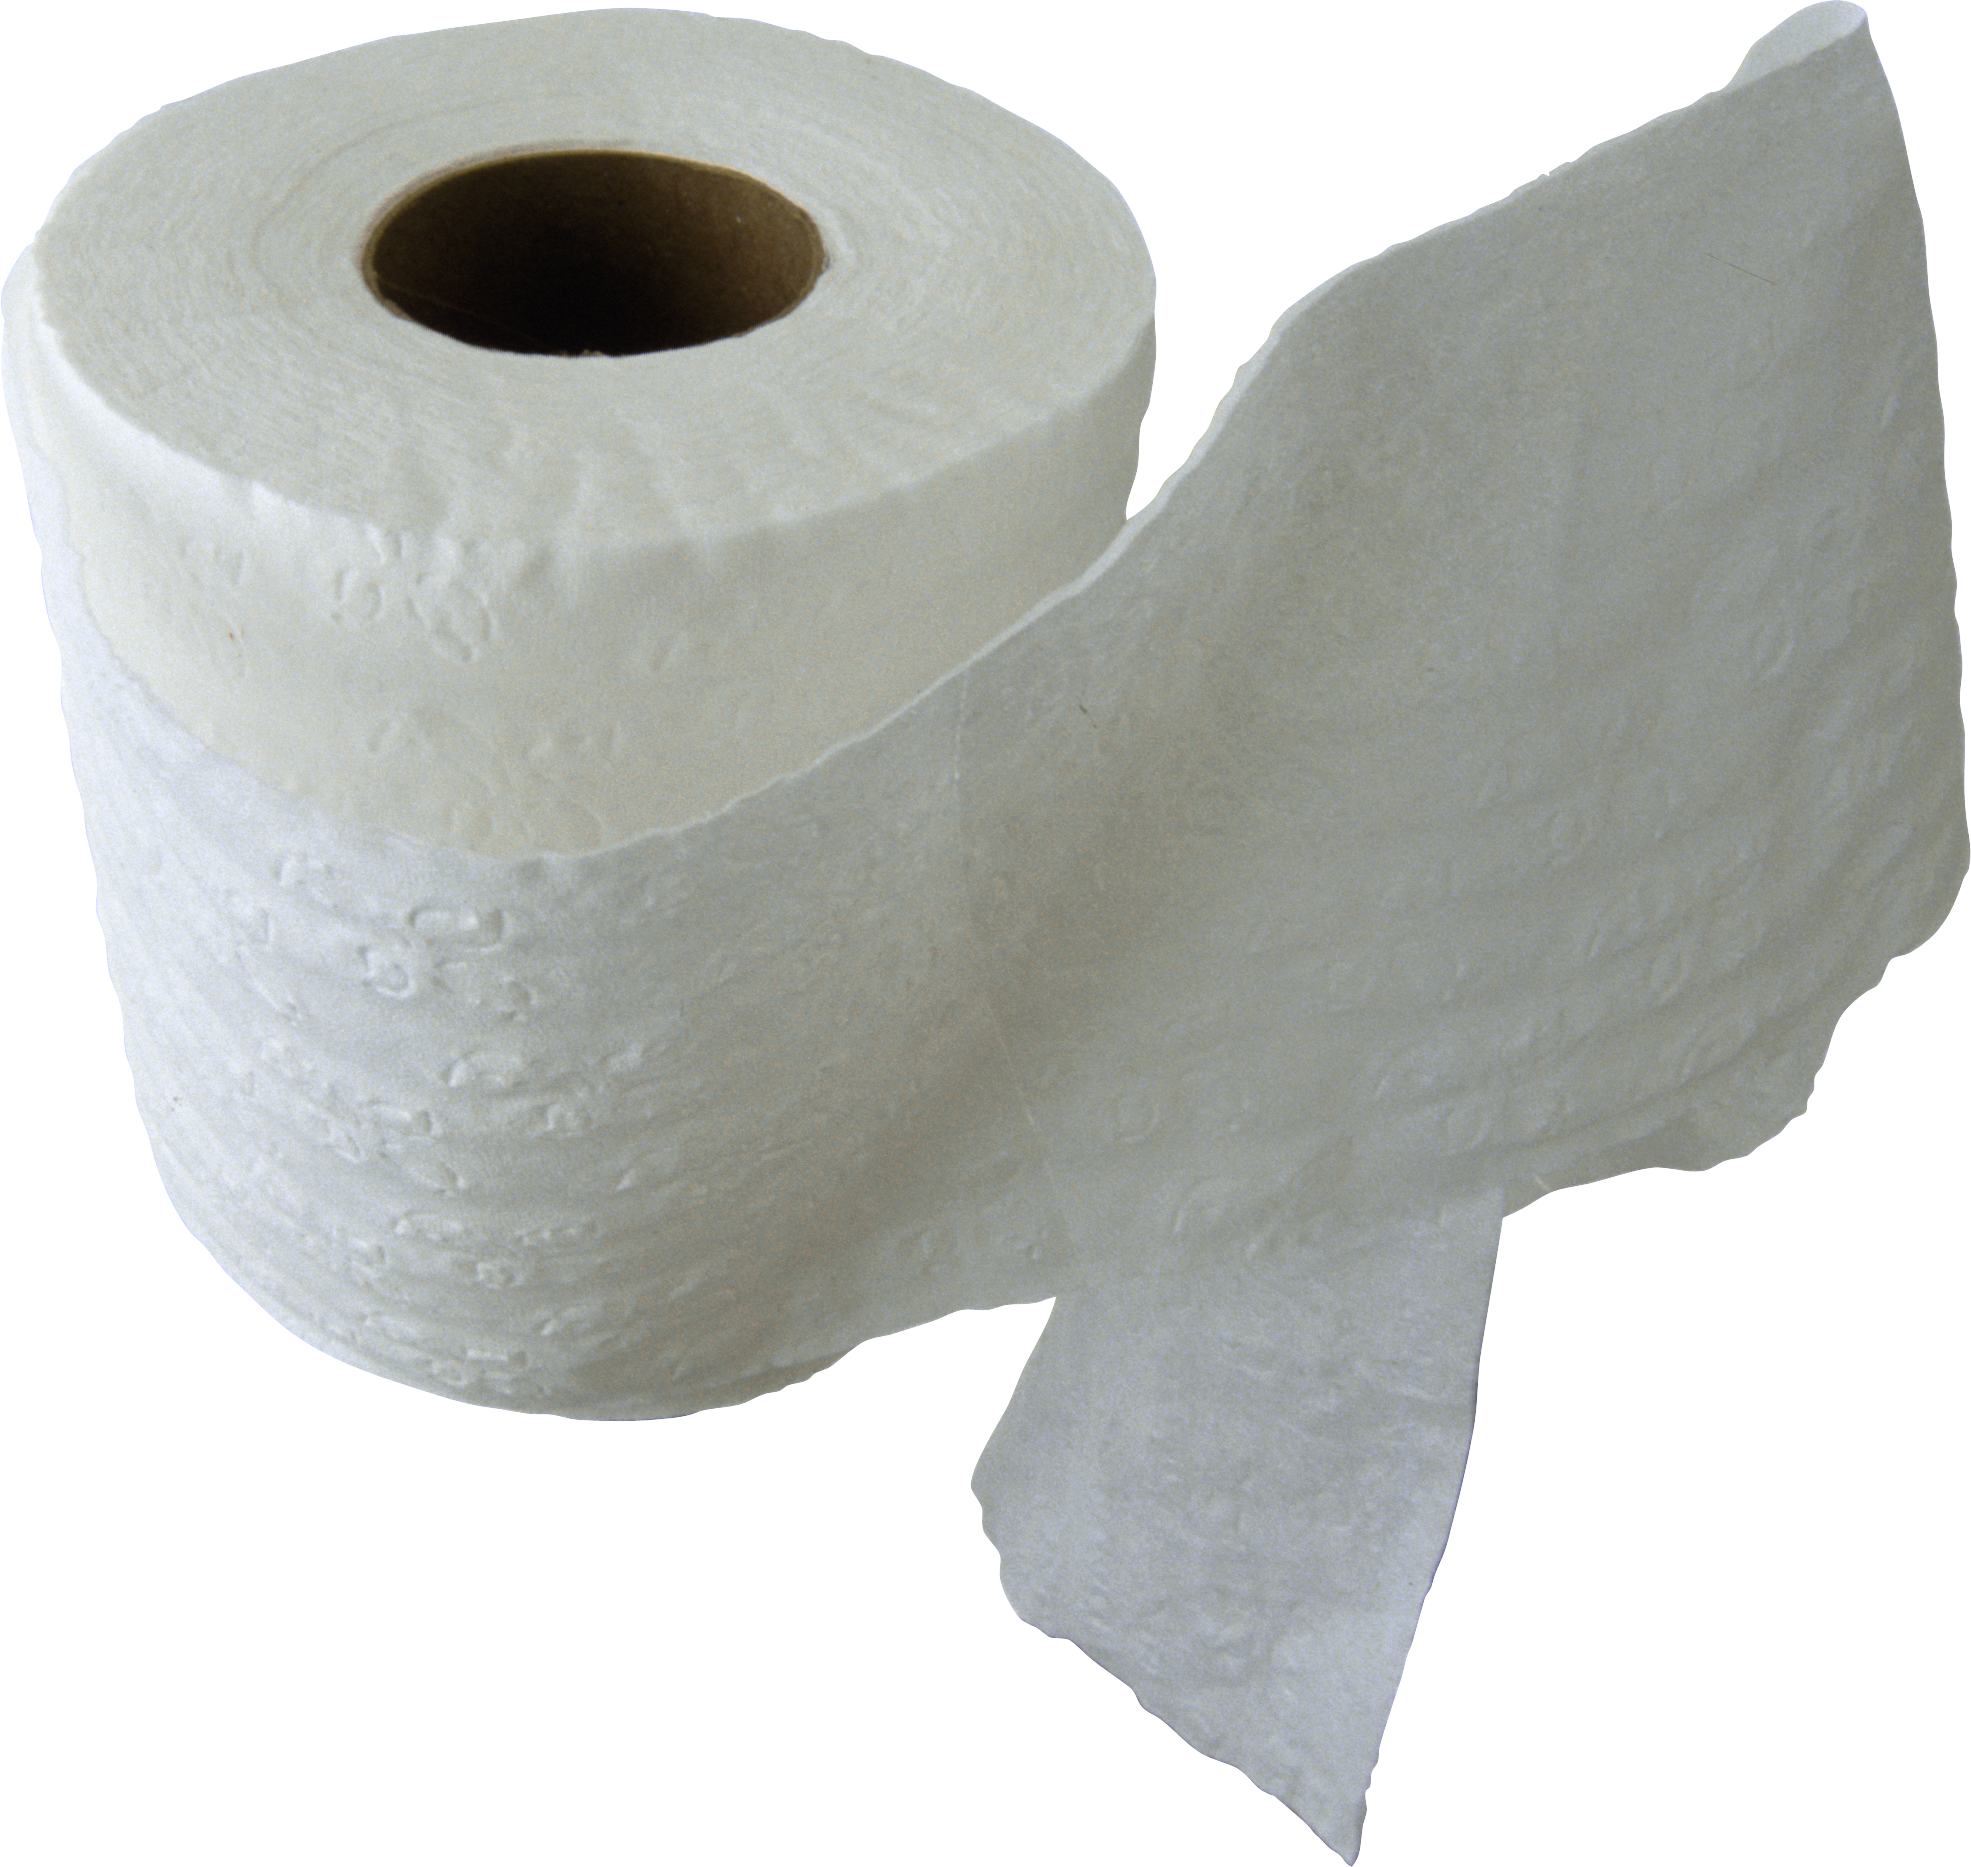 Toilet paper - Toilet Paper R